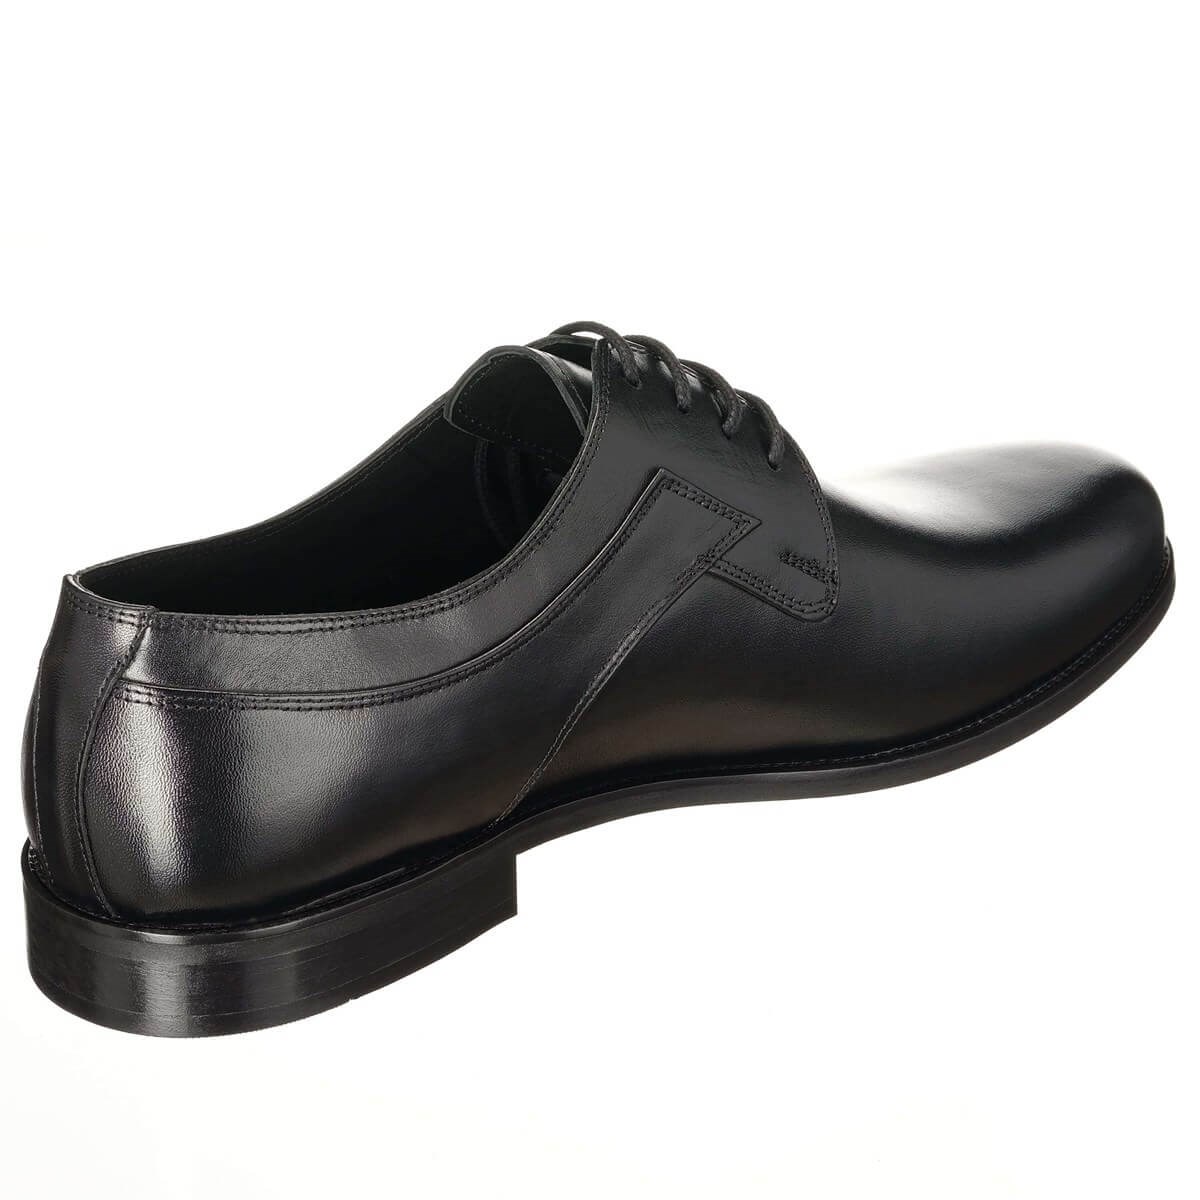 45,46,47,48,49,50 Numaralarda Siyah Analin Bağlı Üst Kalite Erkek Büyük  Numara Klasik Ayakkabı Rahat Şık Kalıp Vip serisi